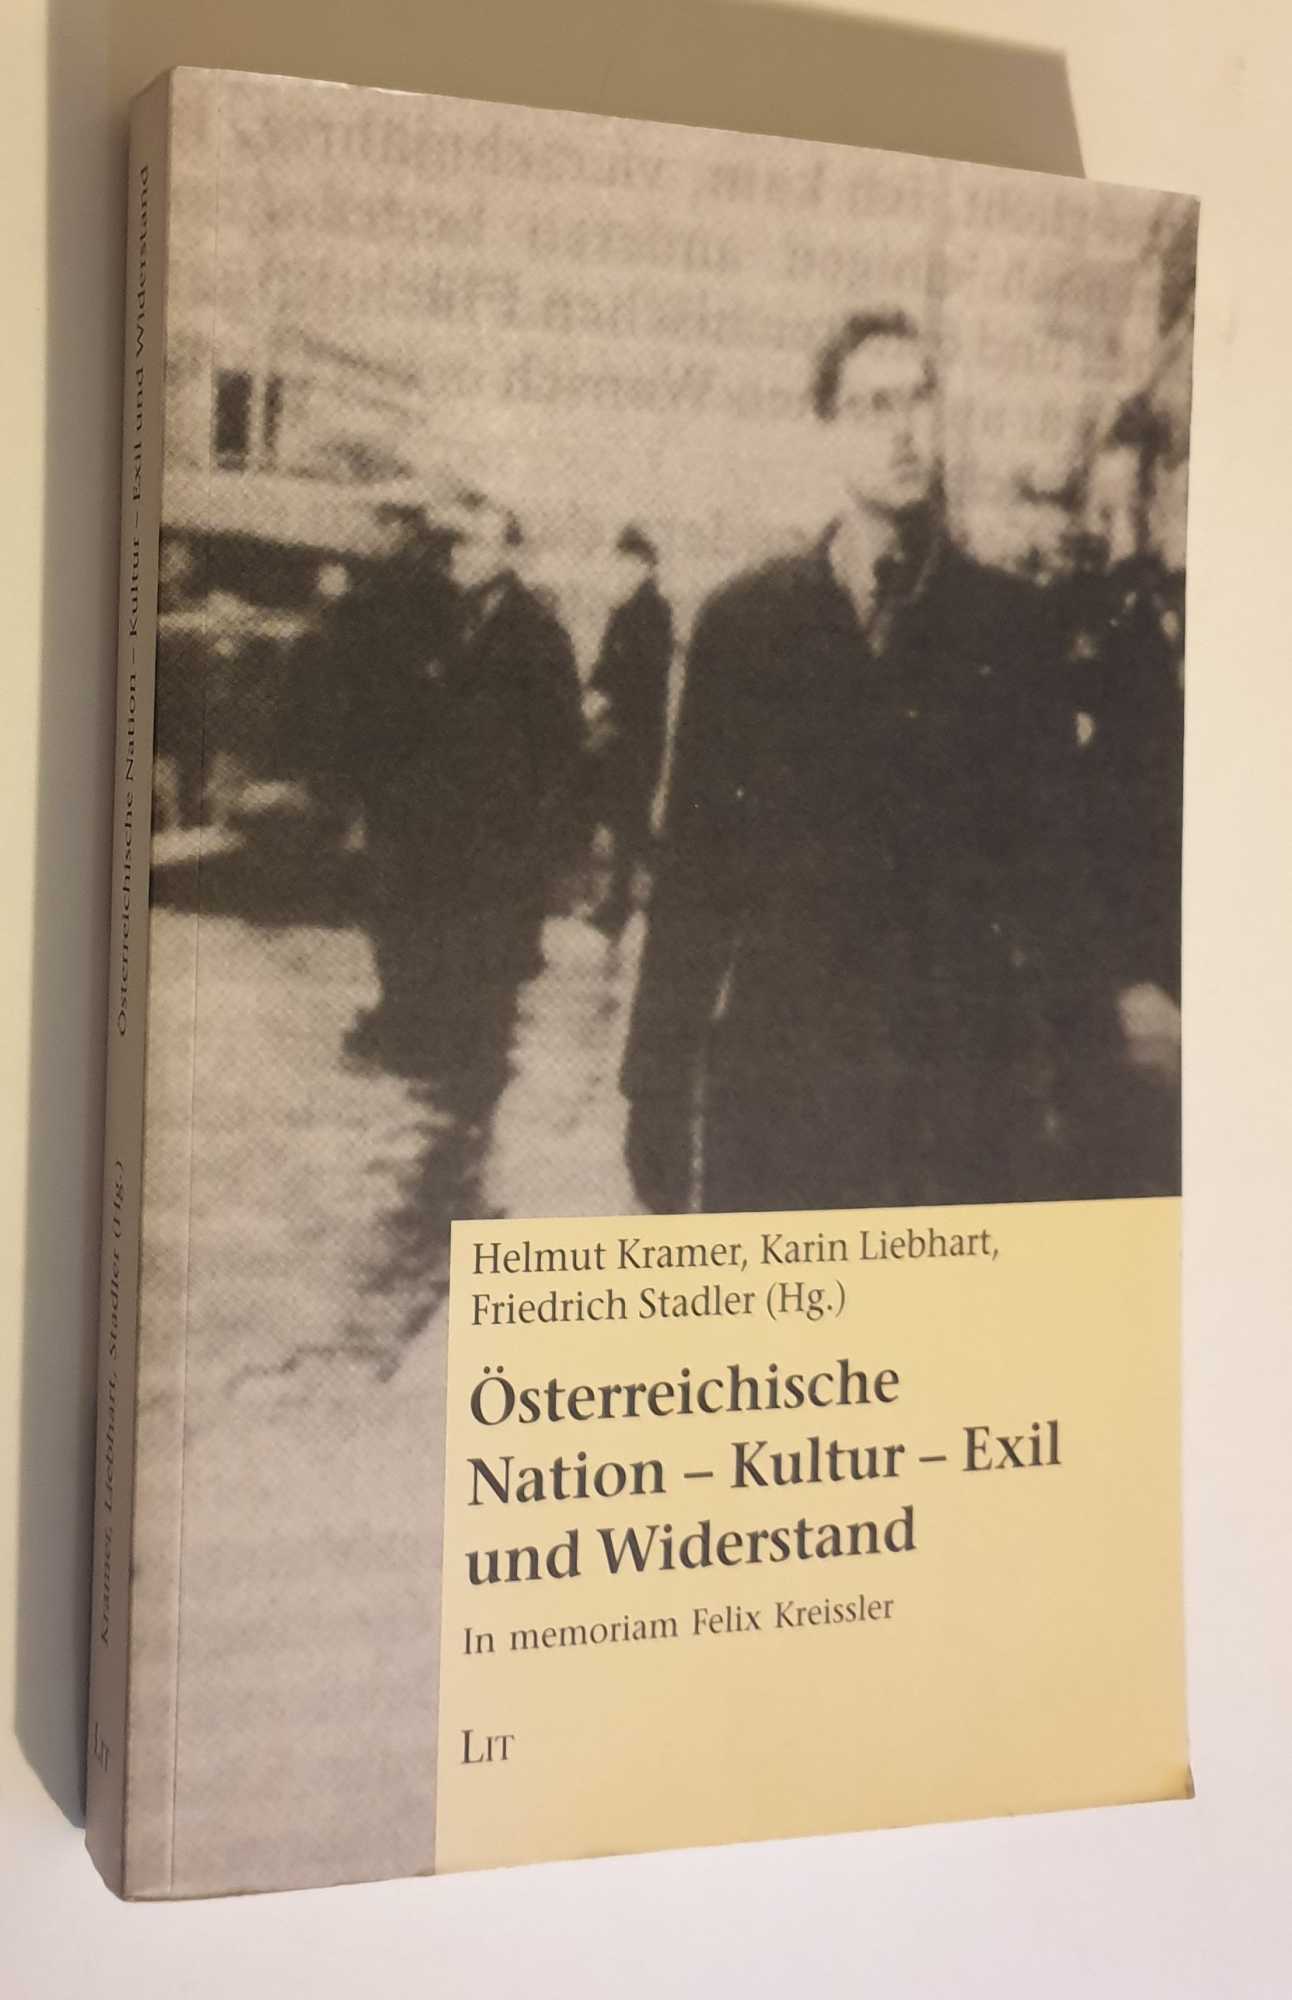 Osterreichische: Nation - Kultur - Exil und Widerstand - Kramer, Helmut